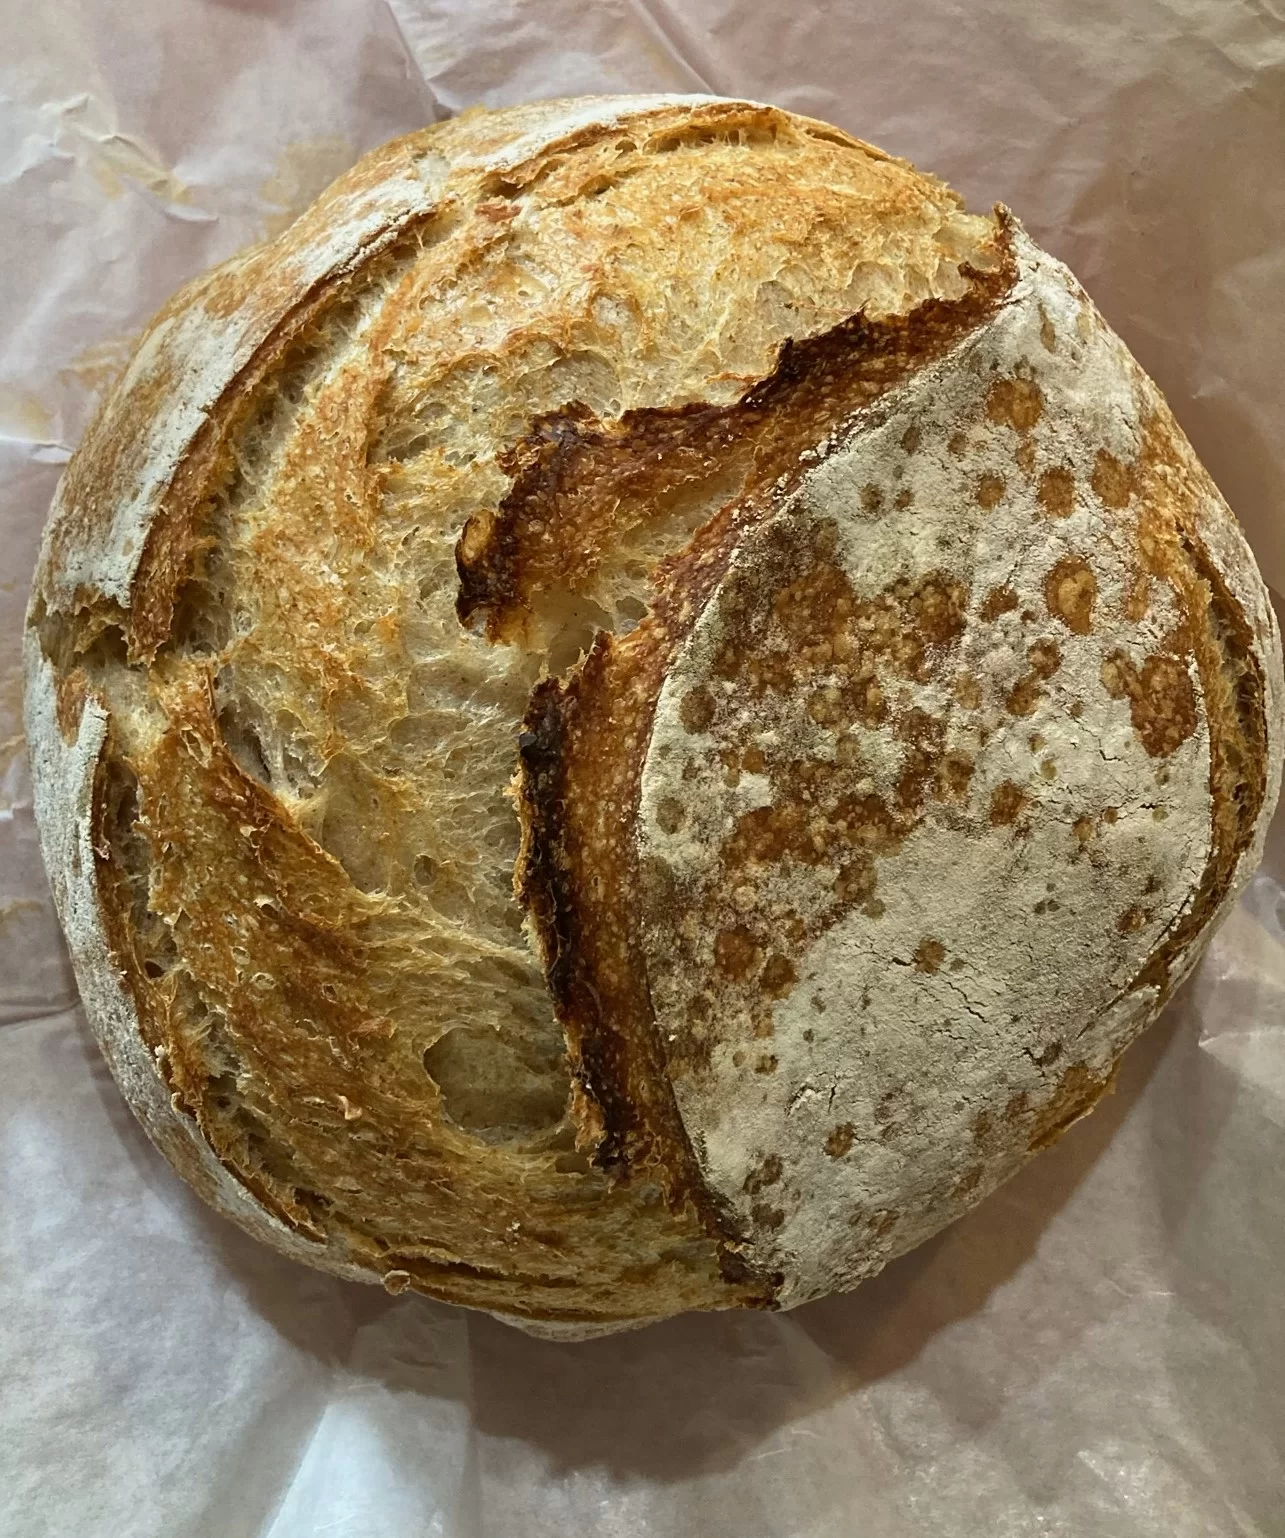 Rustic Sourdough Bread – The Ultimate Artisinal Overnight Recipe